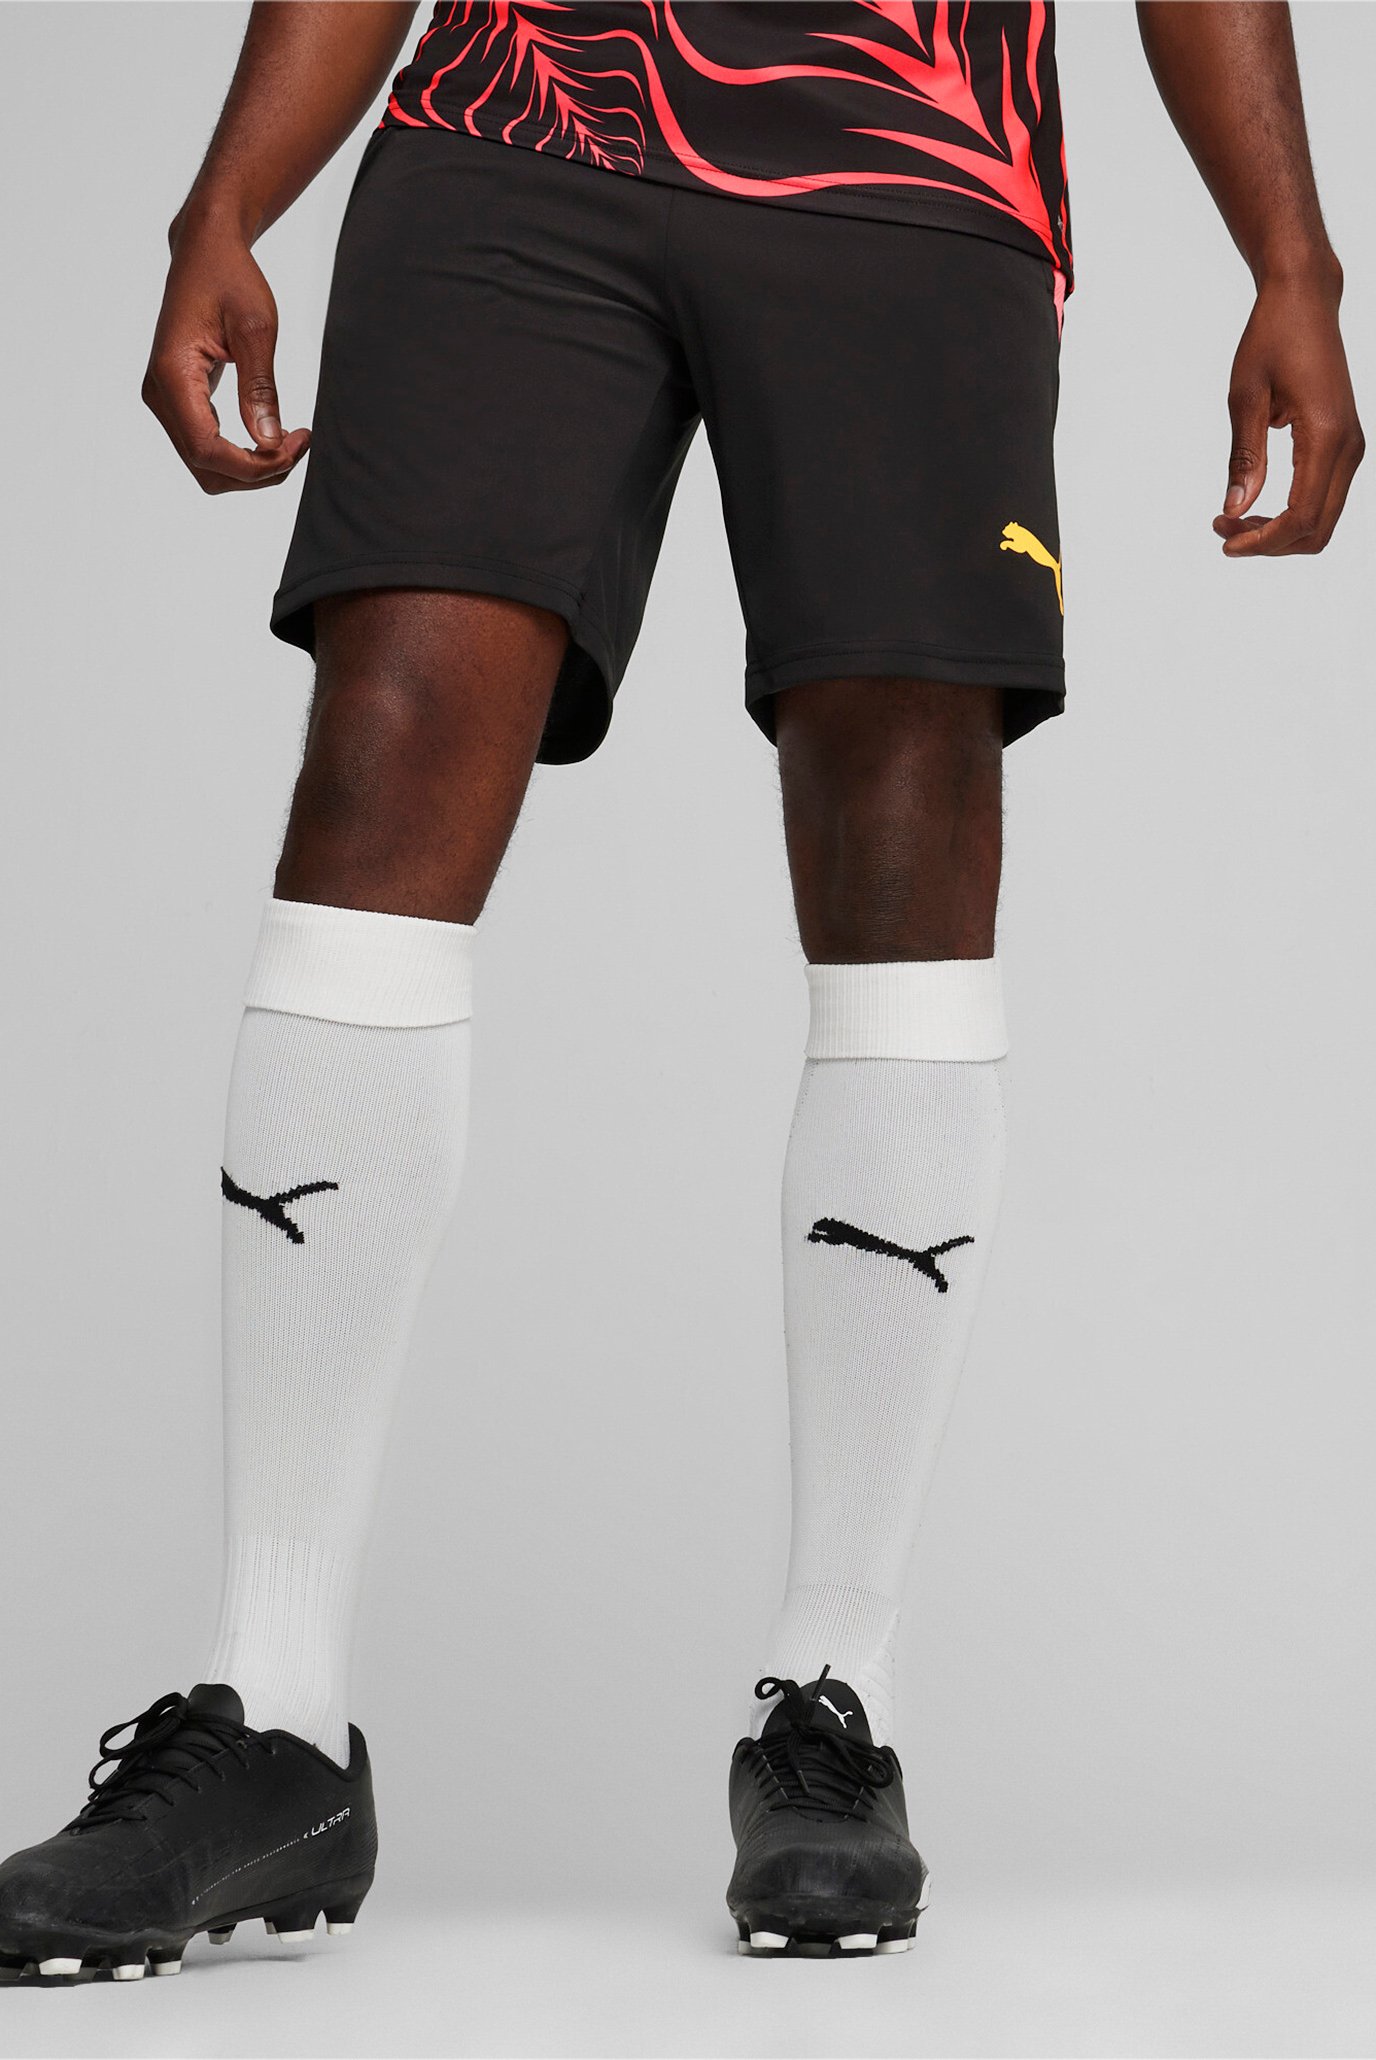 Мужские черные шорты teamLIGA Training Men's Football Shorts 2 1